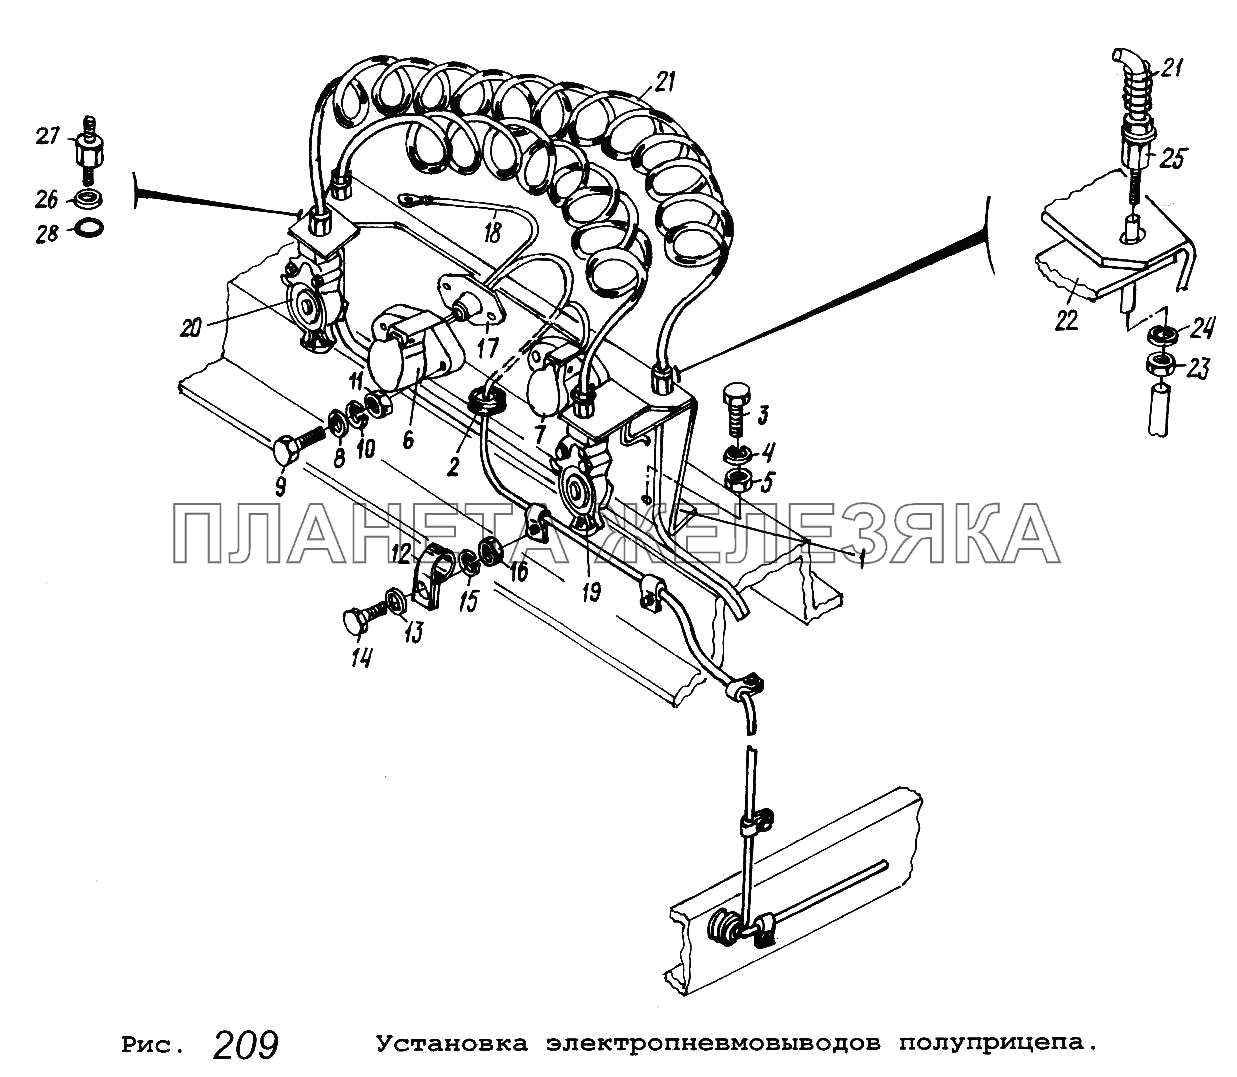 Установка электропневмовыводов полуприцепа МАЗ-5337